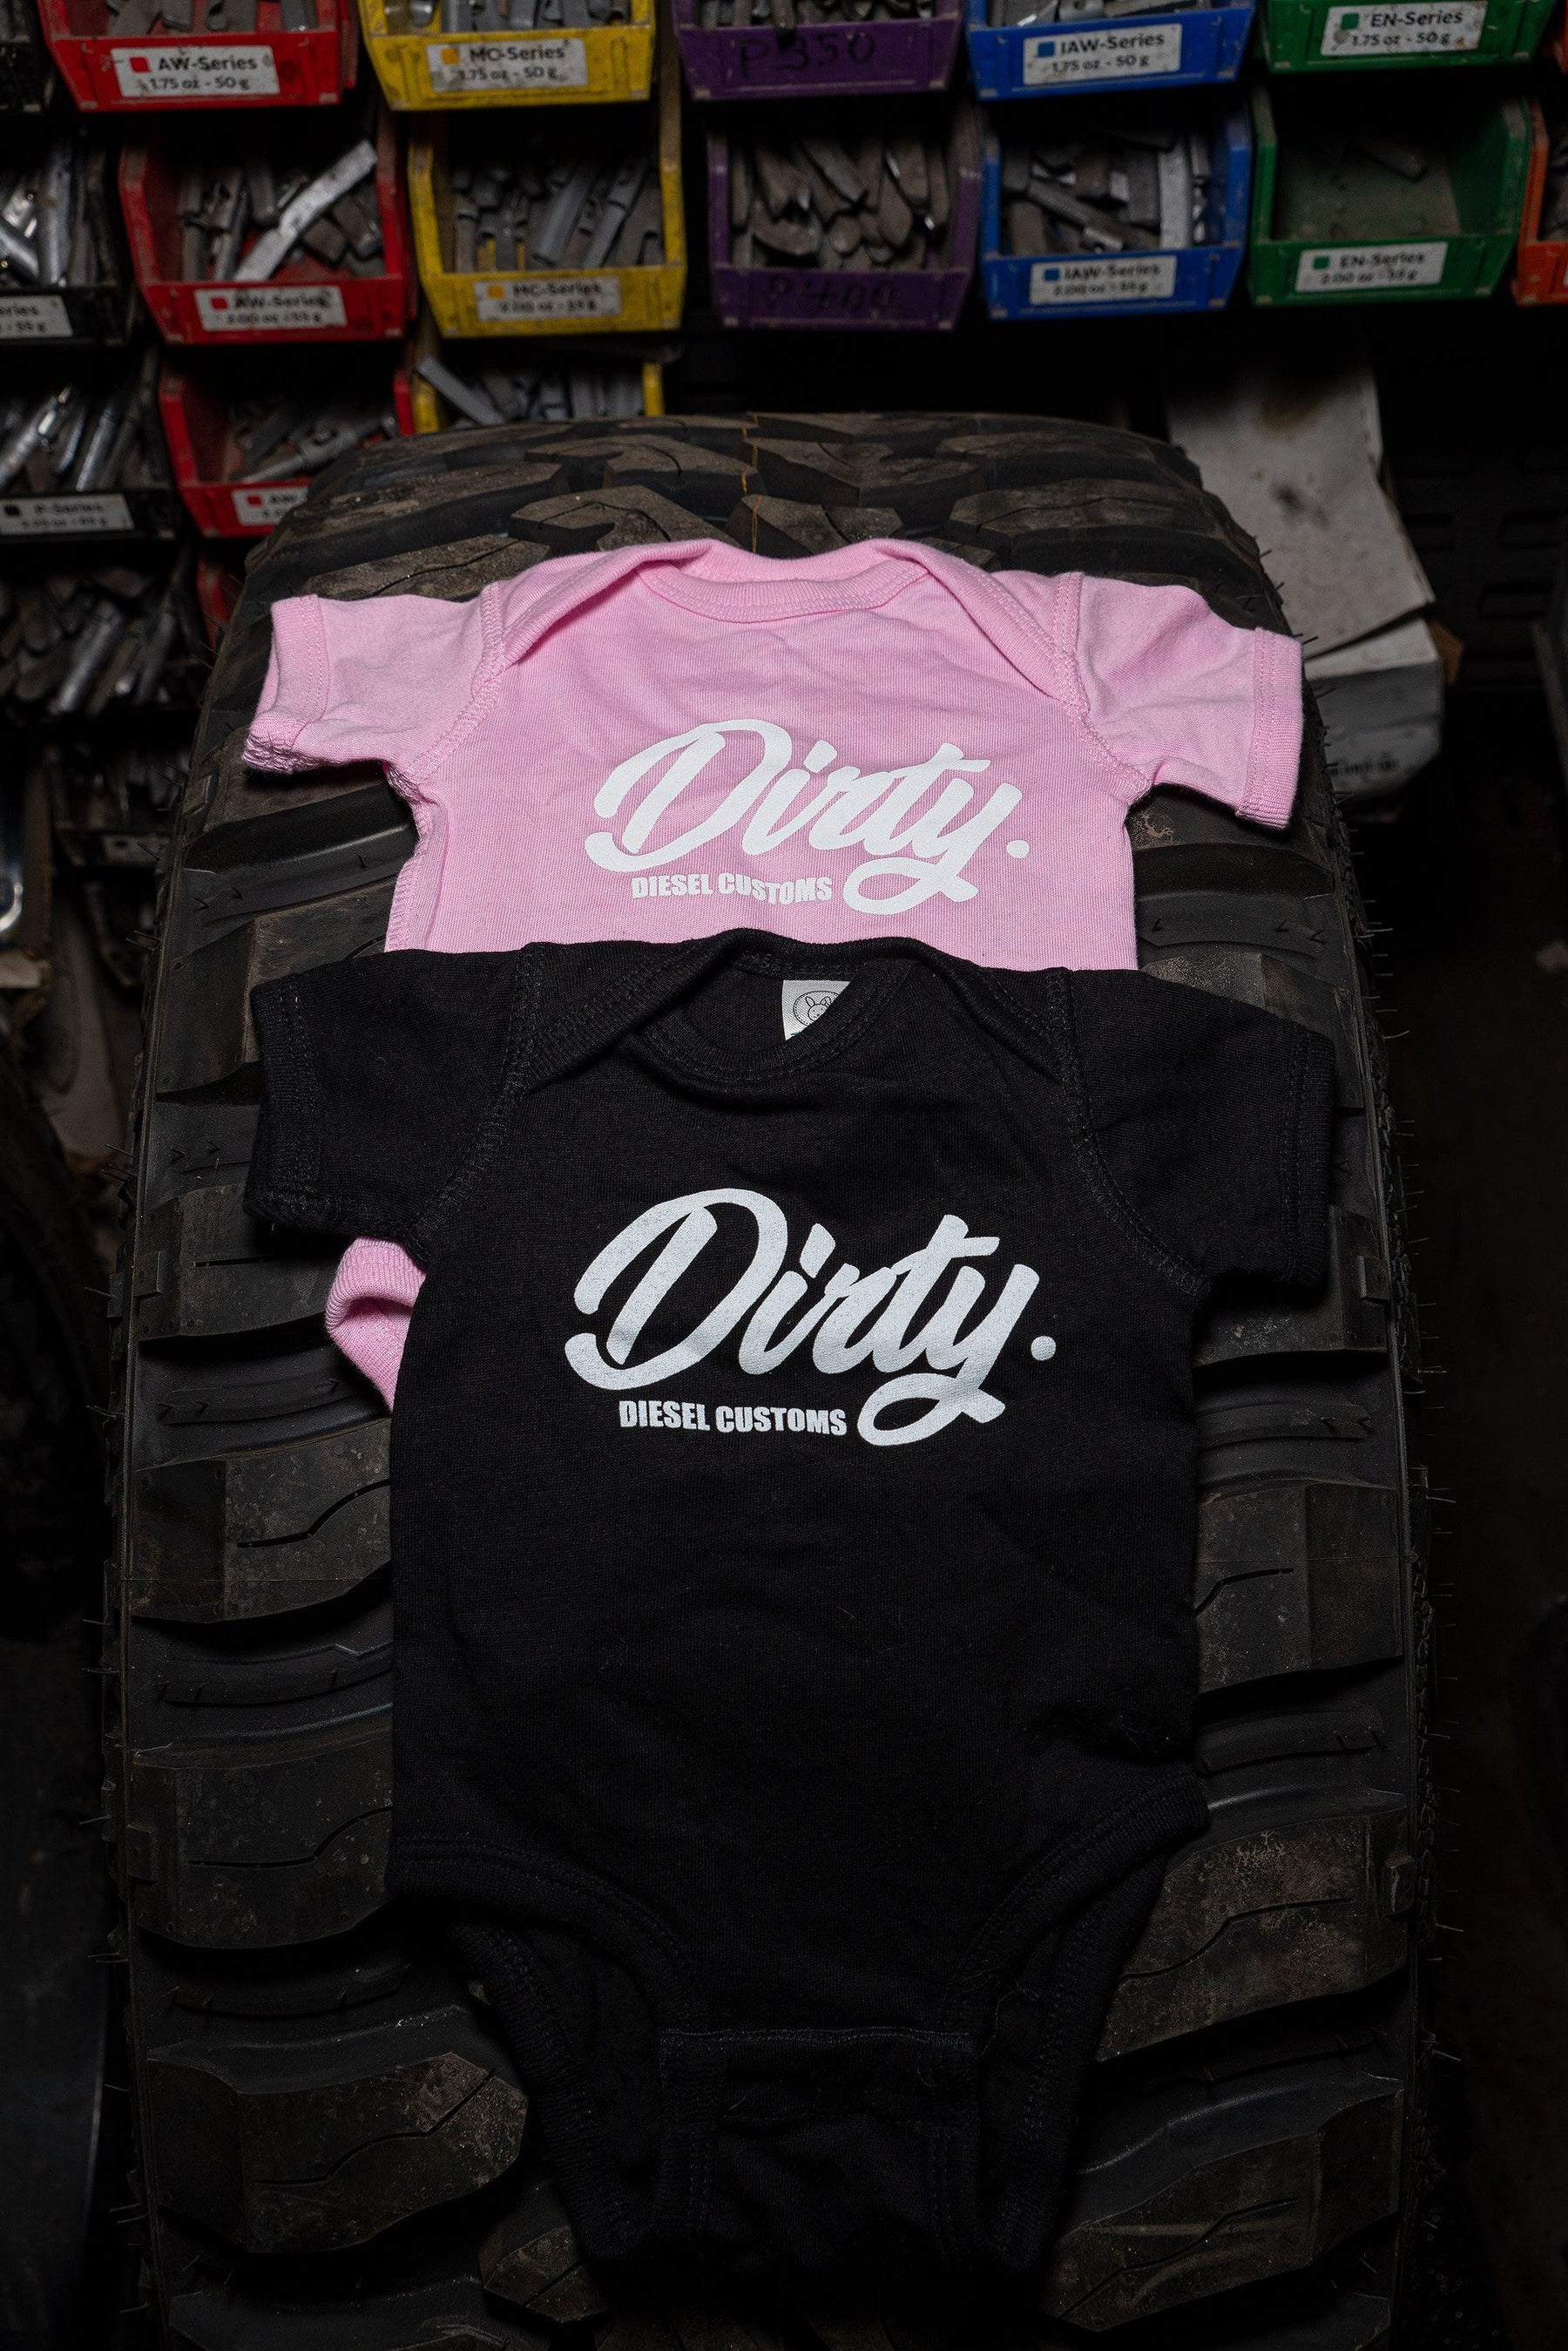 Dirty Diesel Baby T-Shirt-T-Shirt-Dirty Diesel Customs-Dirty Diesel Customs